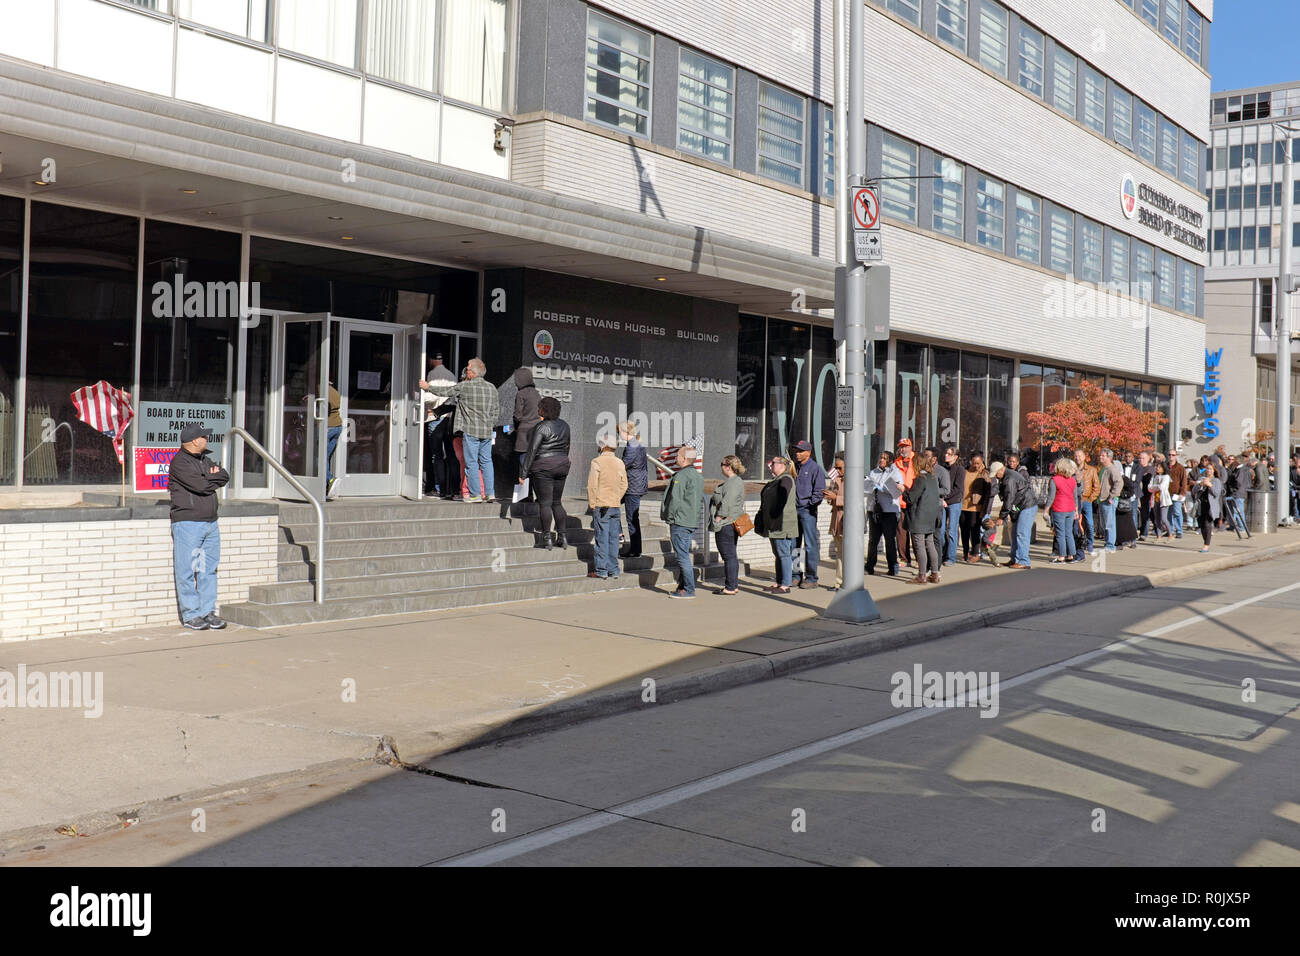 Les électeurs attendent en ligne sur le centre-ville de Cleveland Cuyahoga County Board d'élections d'exercer leur droit de vote lors de l'élections à mi-mandat de 2018. Banque D'Images